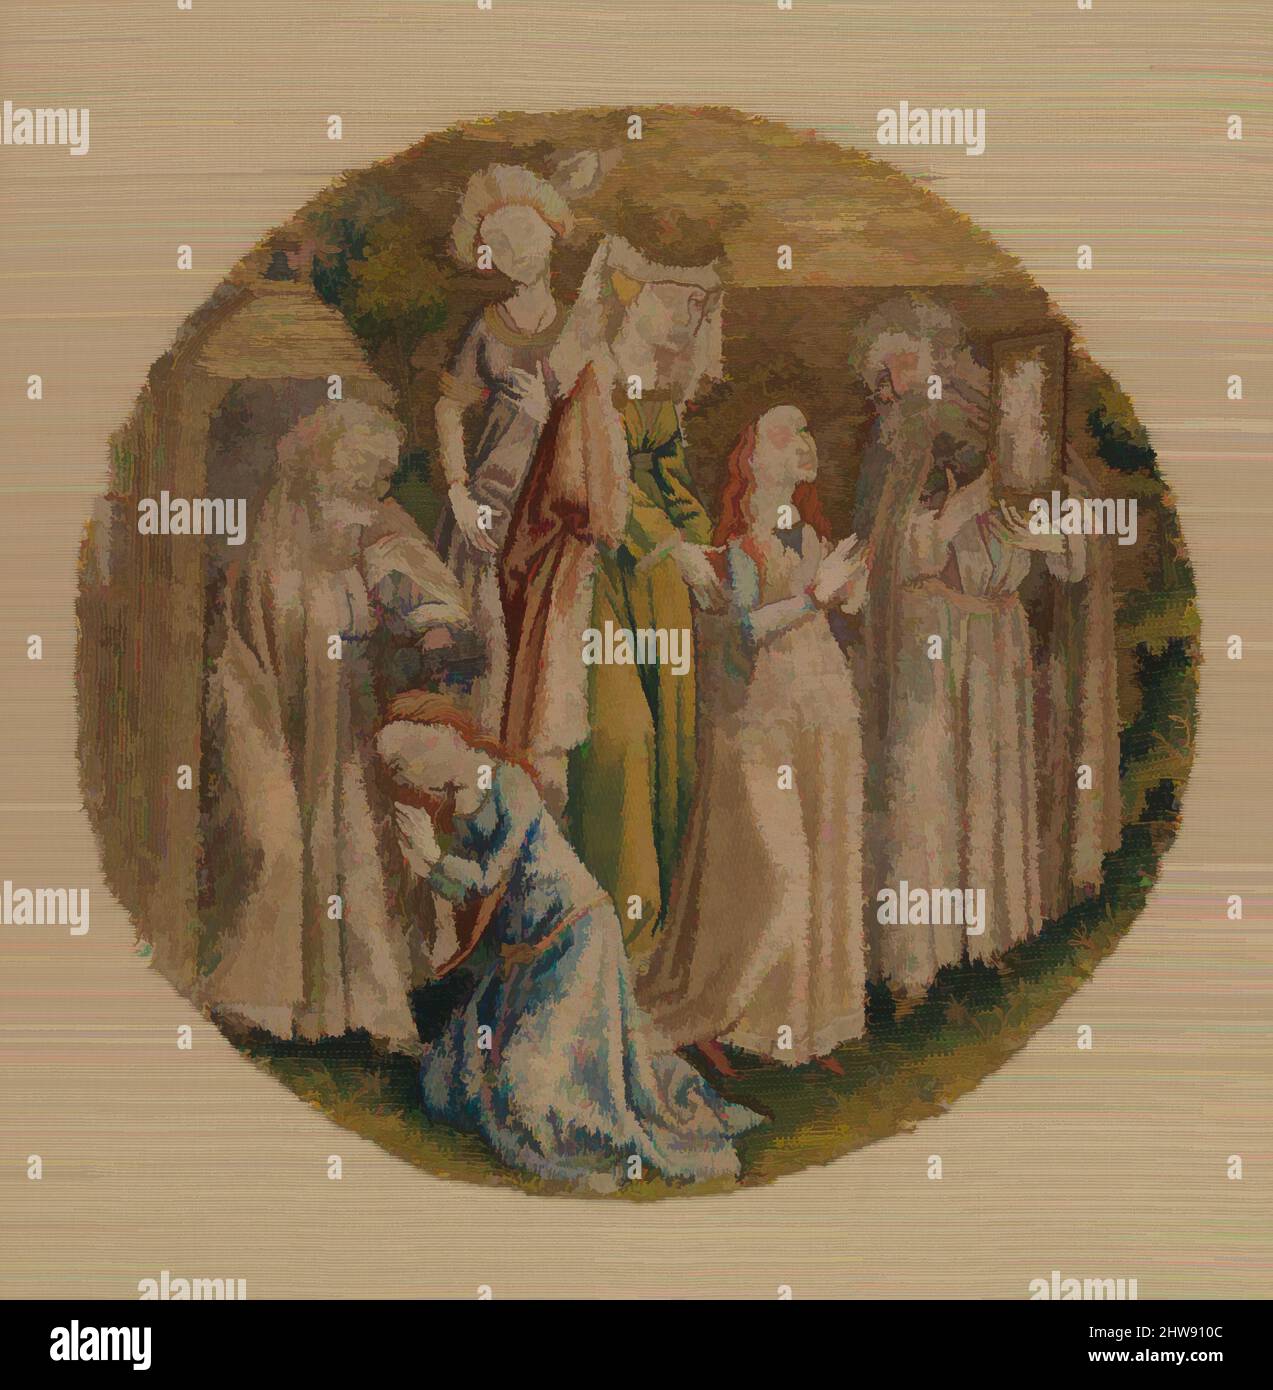 Kunst inspiriert vom Eremit Adrian zeigt St. Katharina ein Bild von Christus und tauft sie, ca. 1430, Südniederländisch, Seide und Metallfaden auf Leinen, insgesamt: 6 5/8 Zoll (16,8 cm), Textilien-bestickt, Diese runde war ursprünglich Teil einer umfangreichen Serie, die einen Altar schmückte, Klassische Werke, die von Artotop mit einem Schuss Moderne modernisiert wurden. Formen, Farbe und Wert, auffällige visuelle Wirkung auf Kunst. Emotionen durch Freiheit von Kunstwerken auf zeitgemäße Weise. Eine zeitlose Botschaft, die eine wild kreative neue Richtung verfolgt. Künstler, die sich dem digitalen Medium zuwenden und die Artotop NFT erschaffen Stockfoto